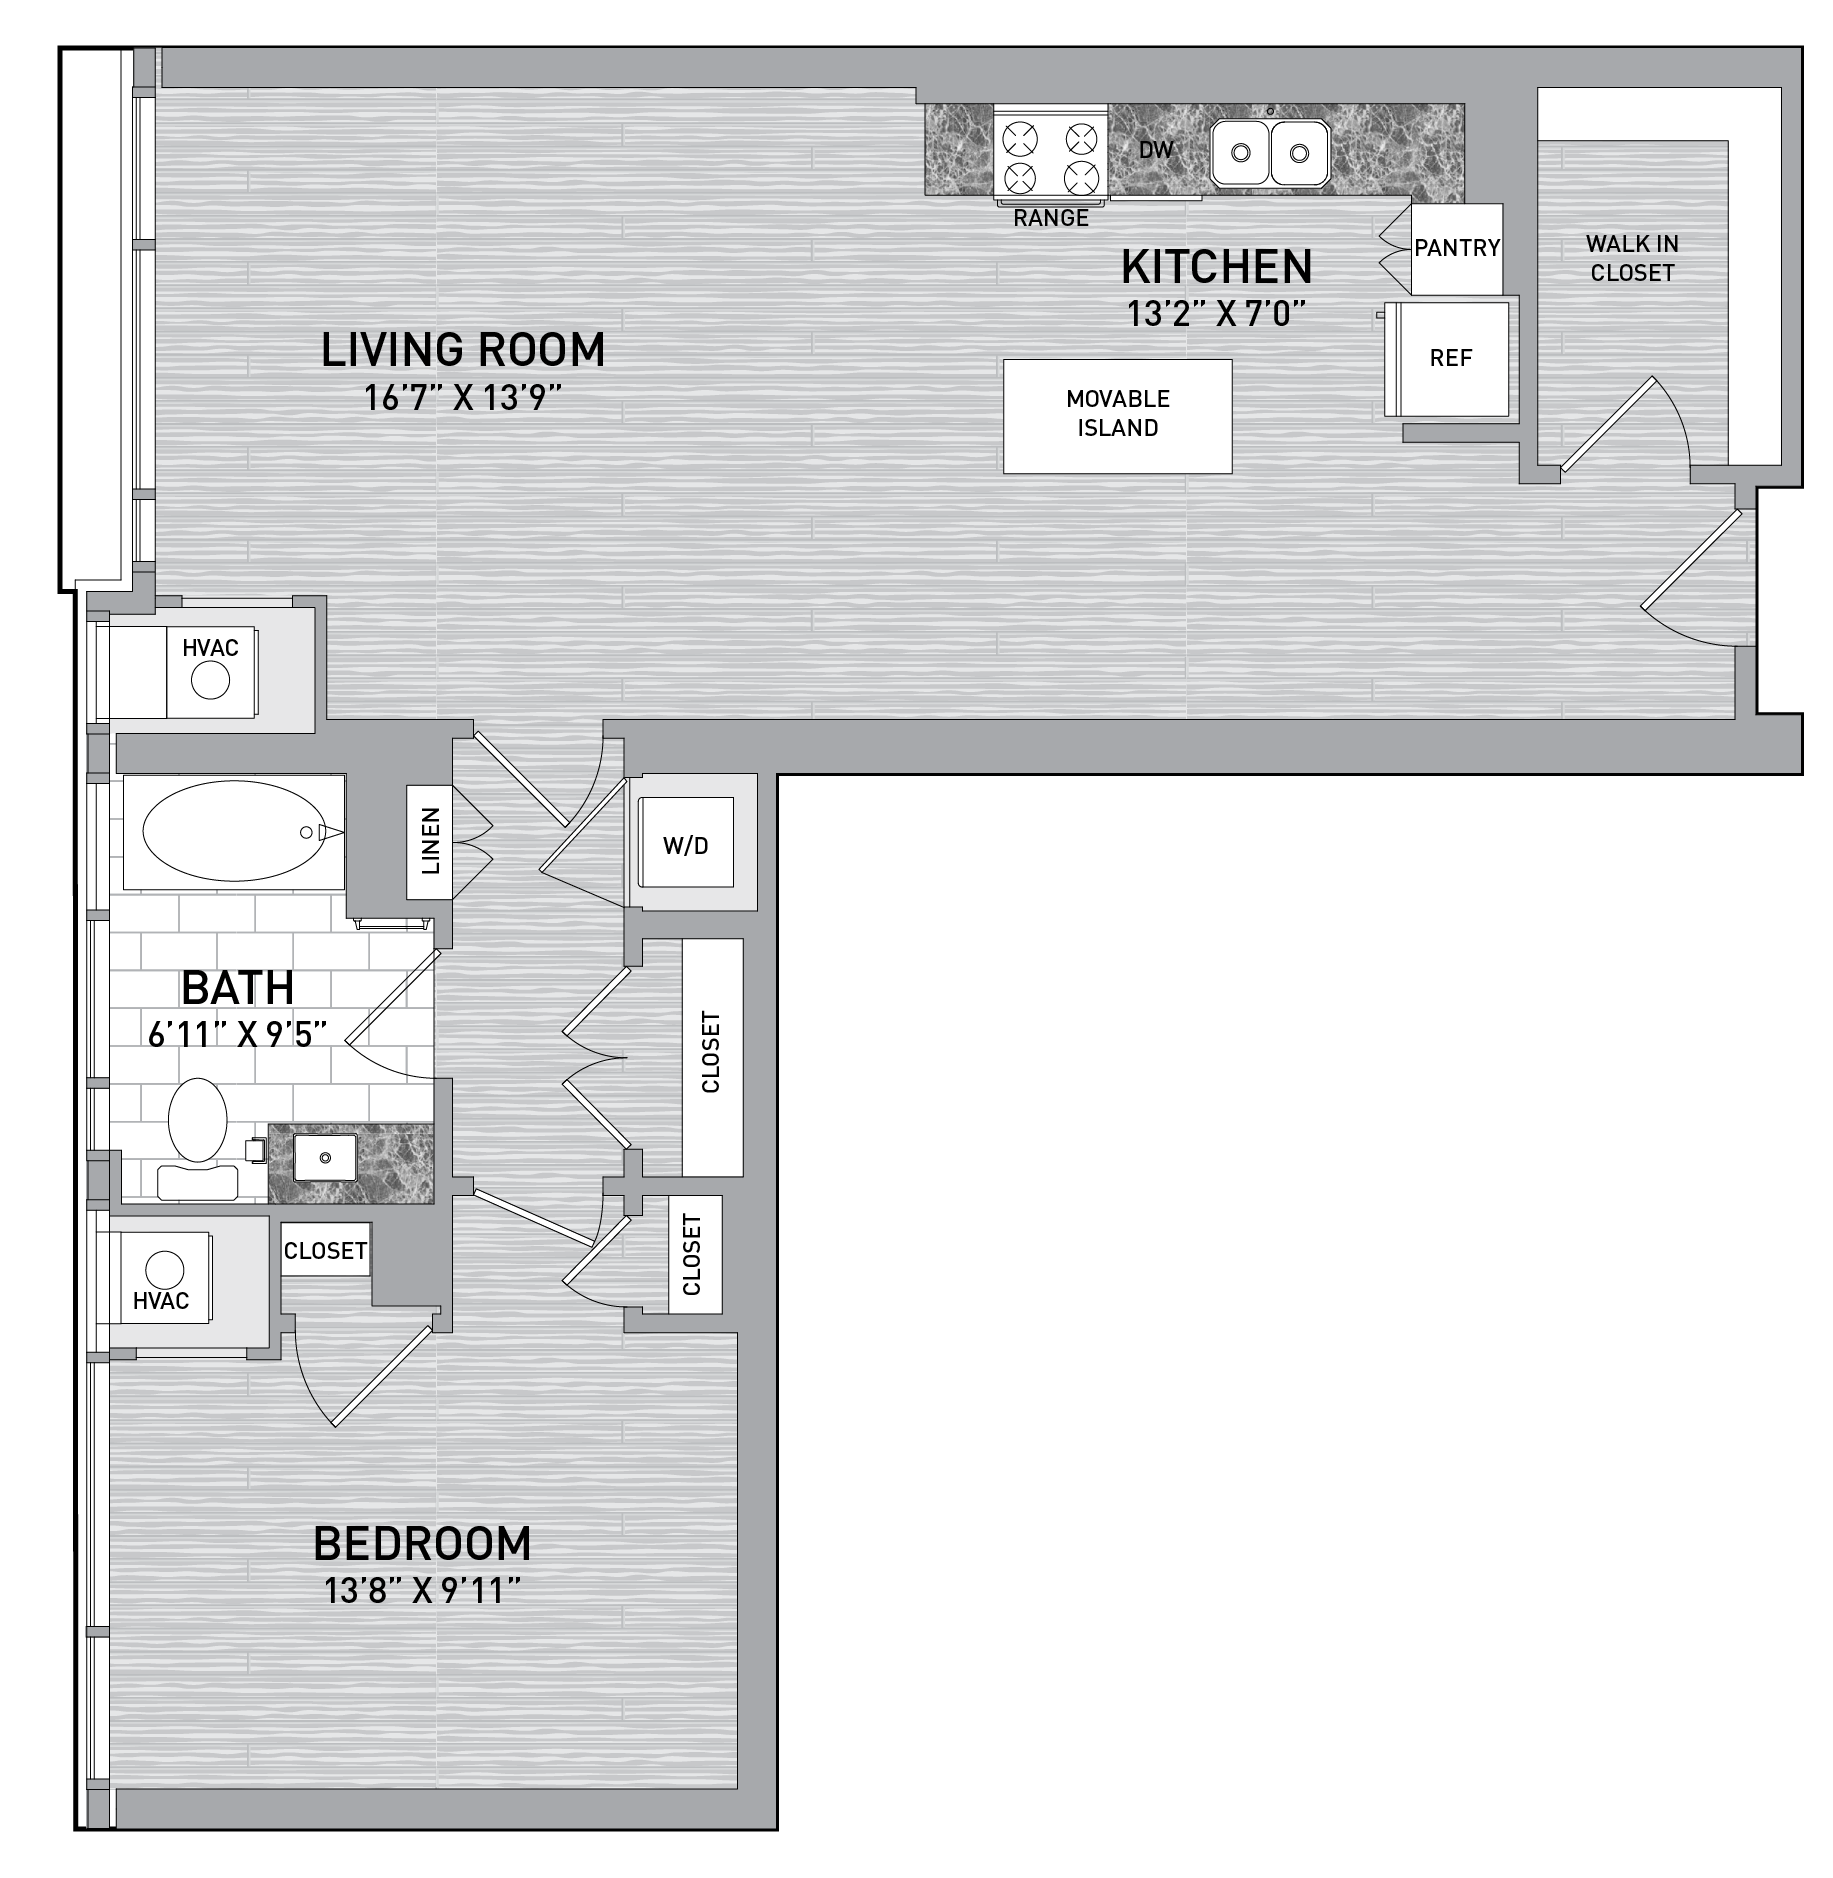 floorplan image of unit id 0332